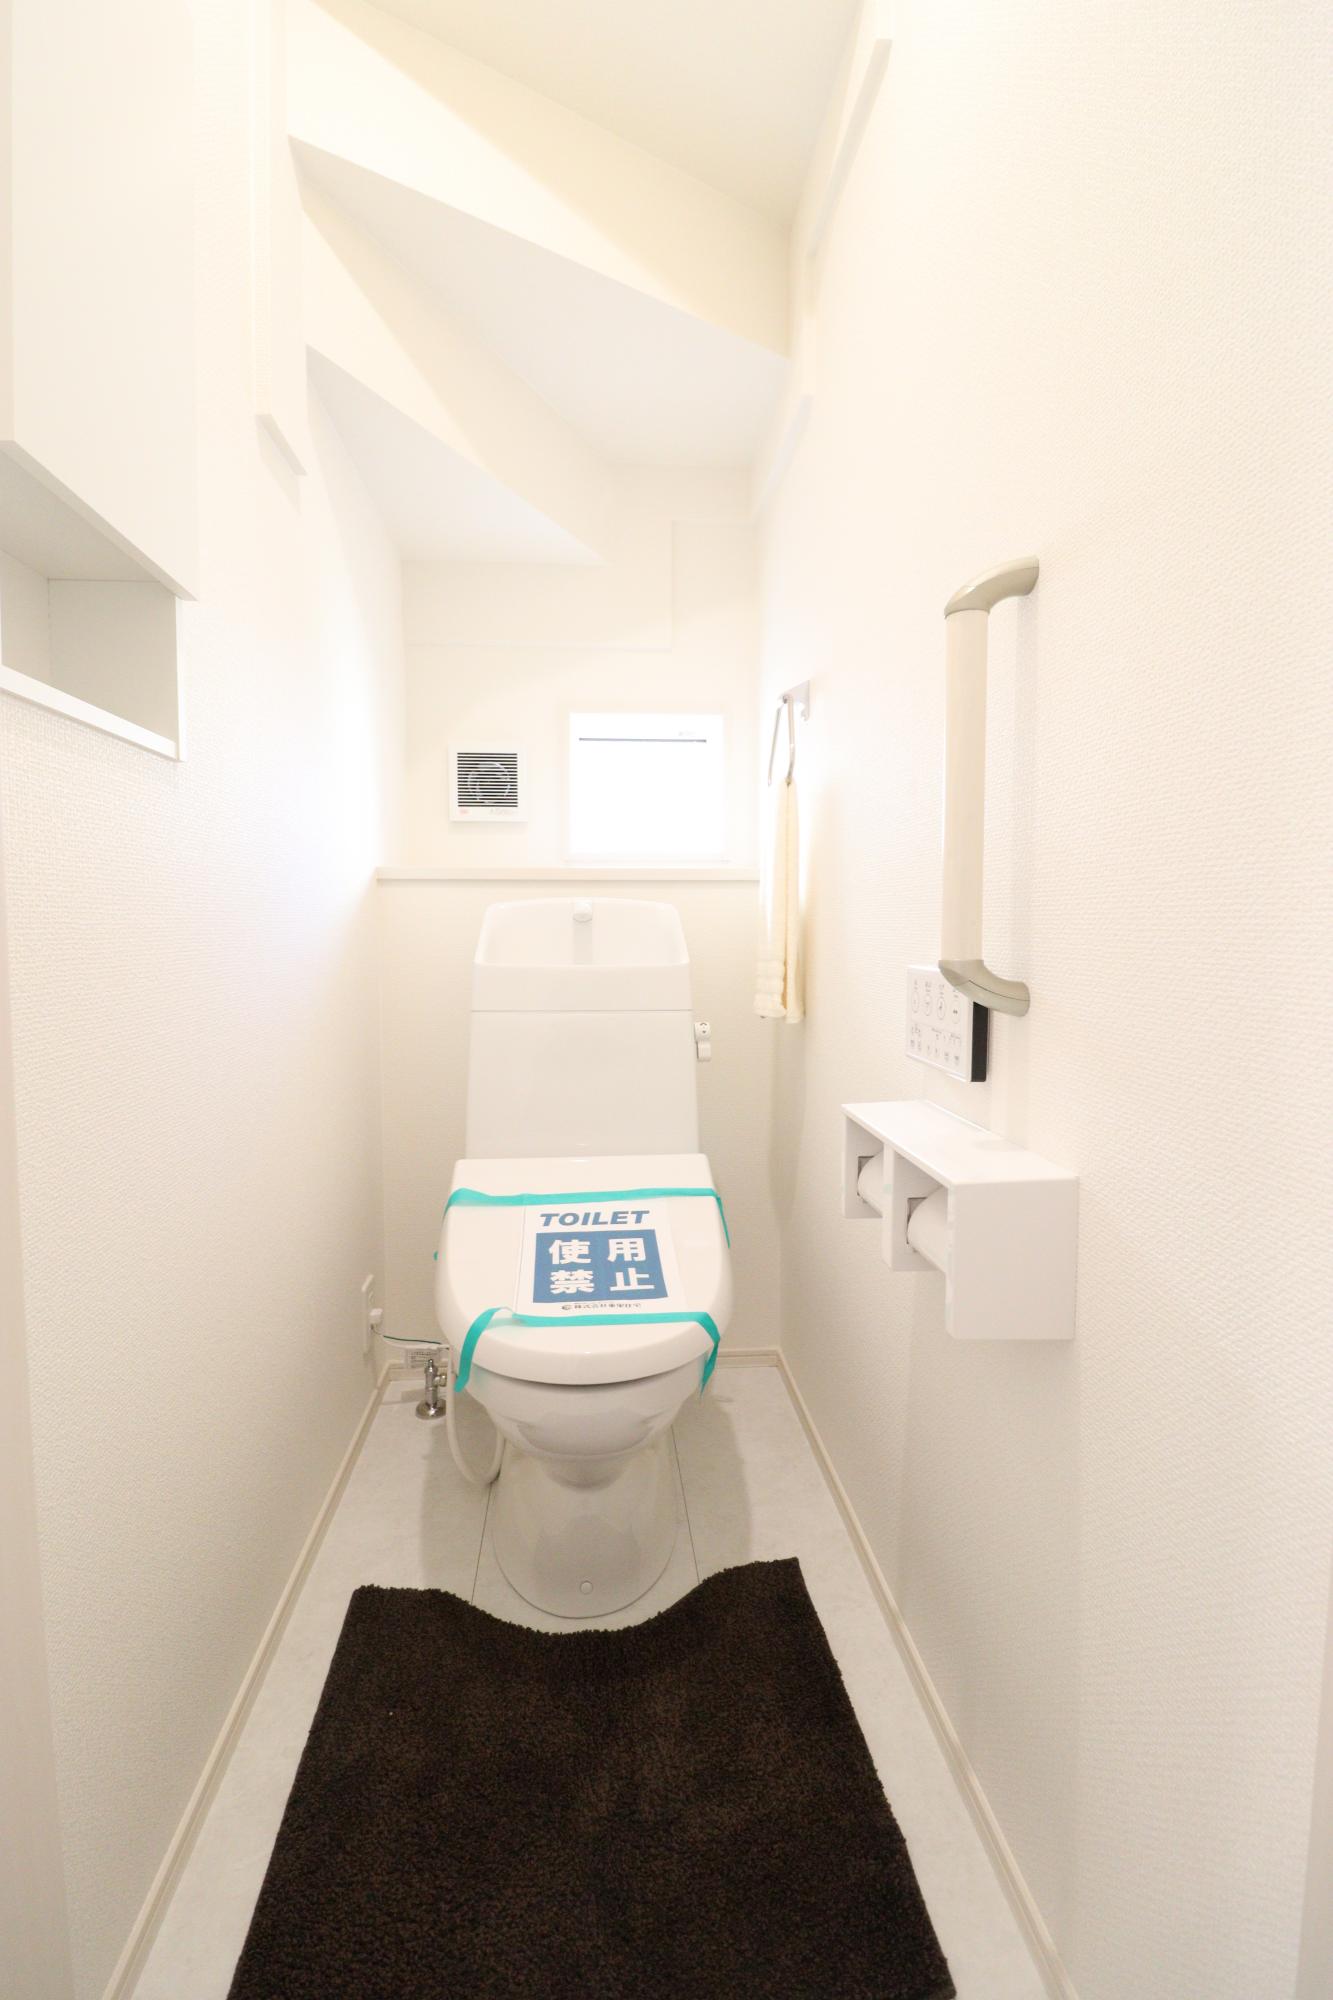 トイレ　1階　トイレットペーパーや清掃用具を収納できる壁収納(写真左側)が備わっています。